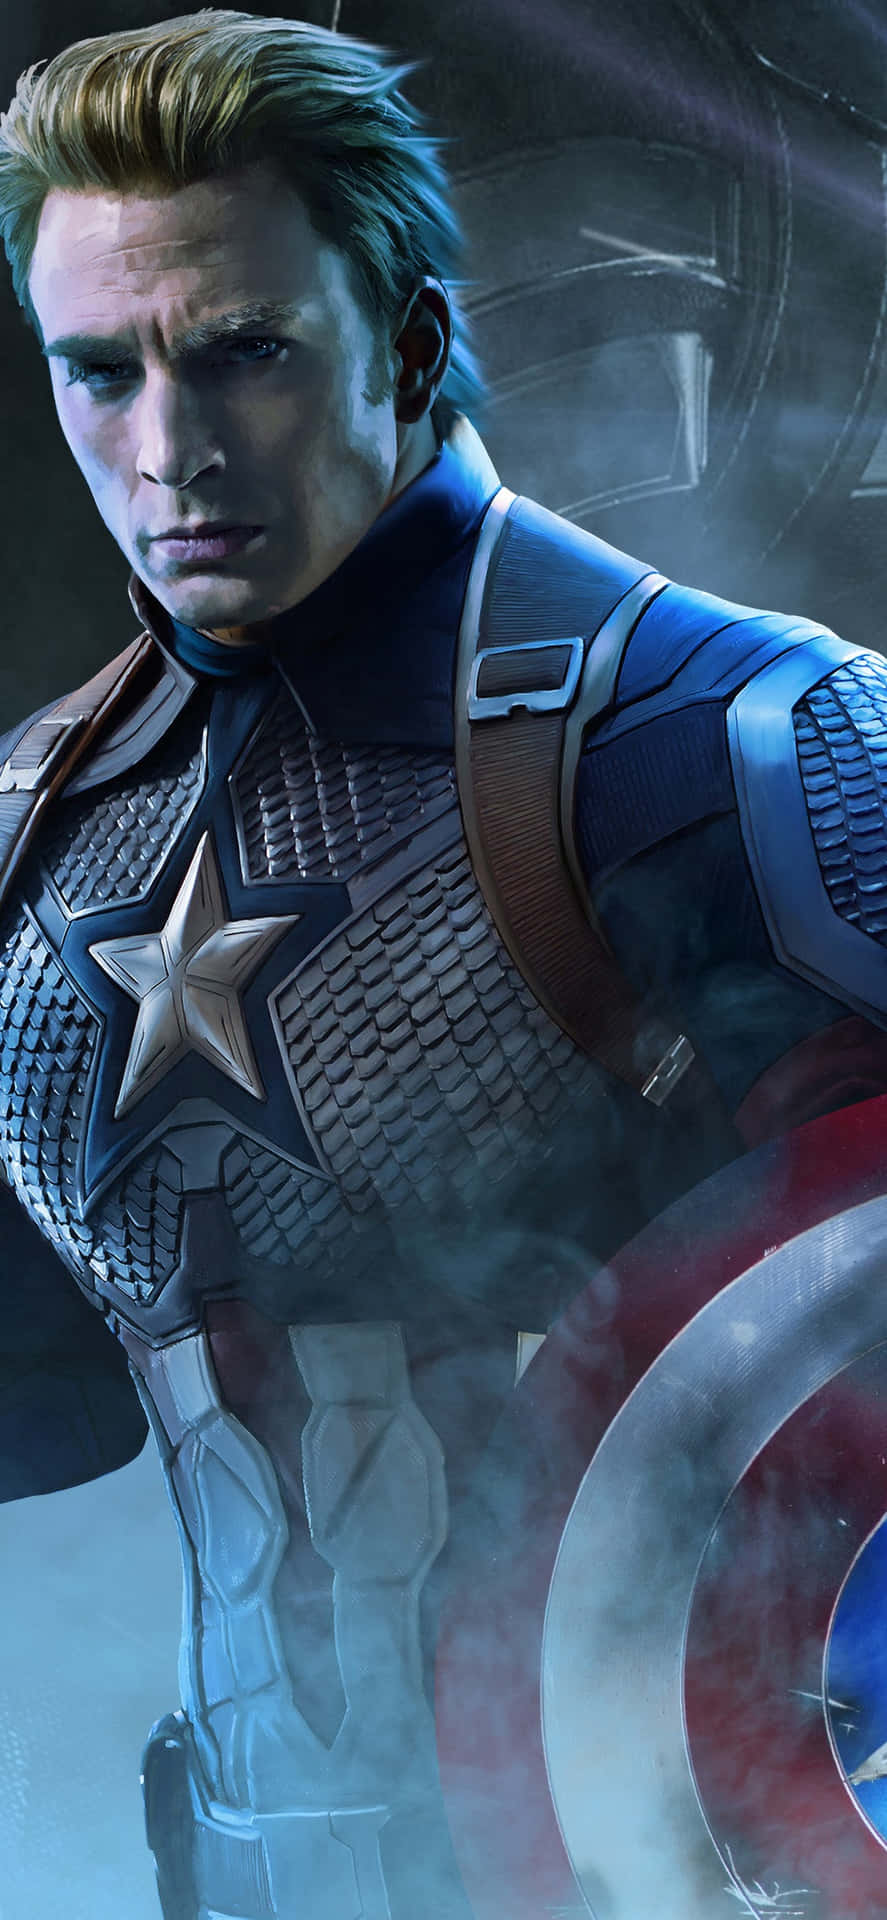 Chris Evans as Captain America in Endgame Wallpaper